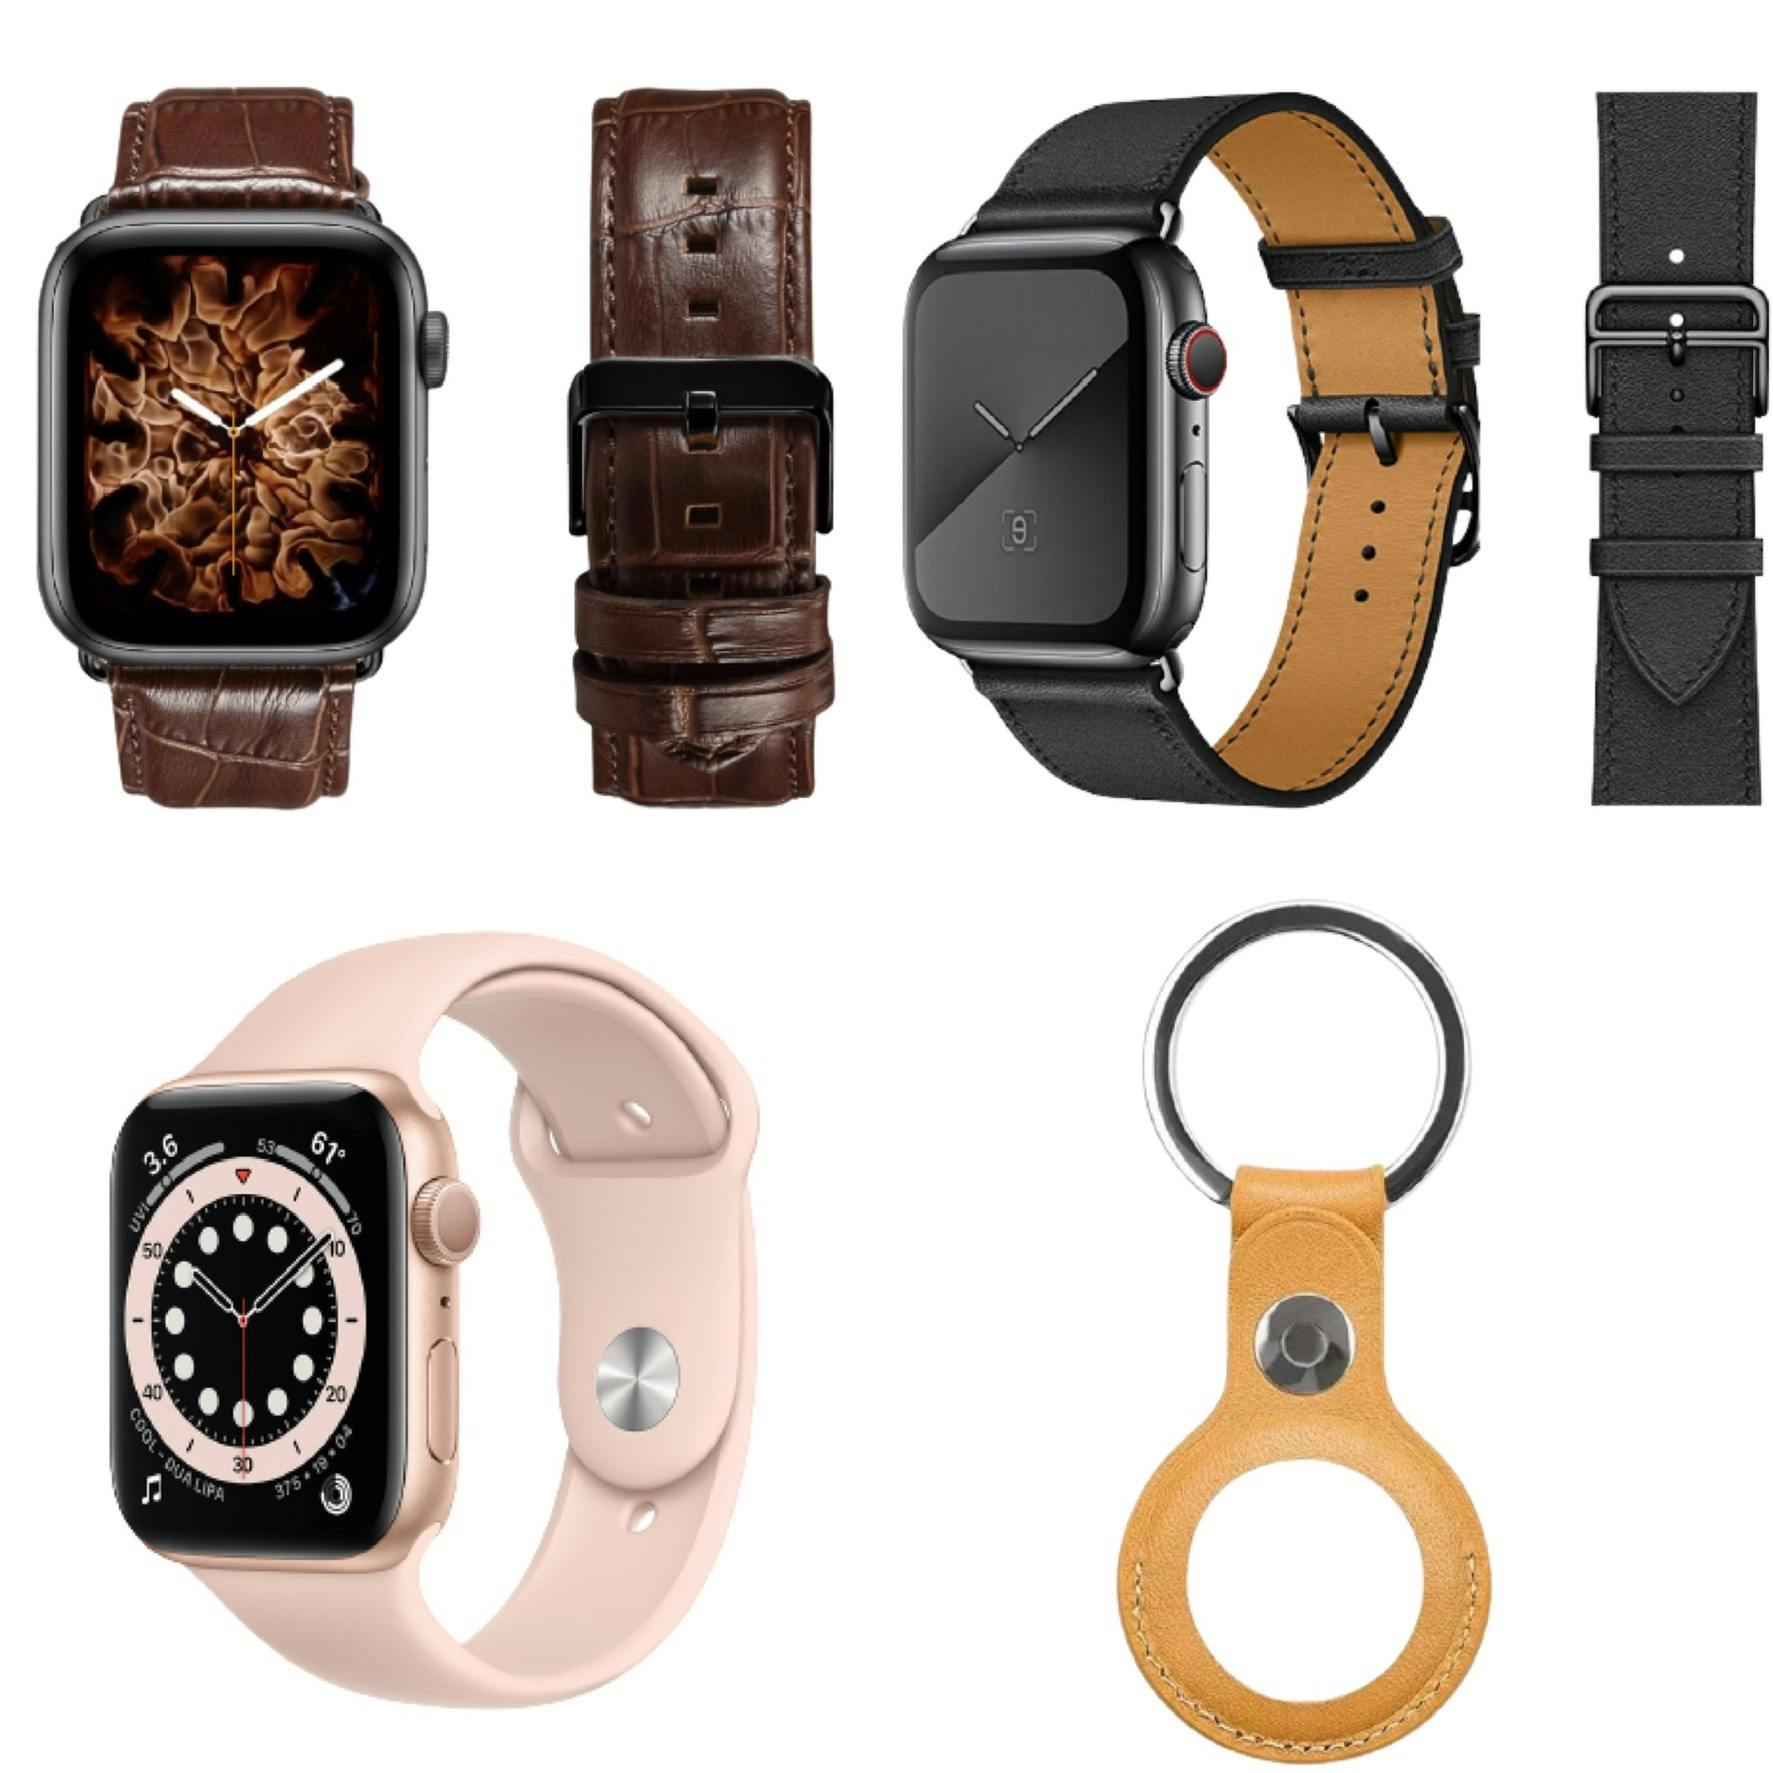 Webshop med accessories til Watch, iPhone og AirTag